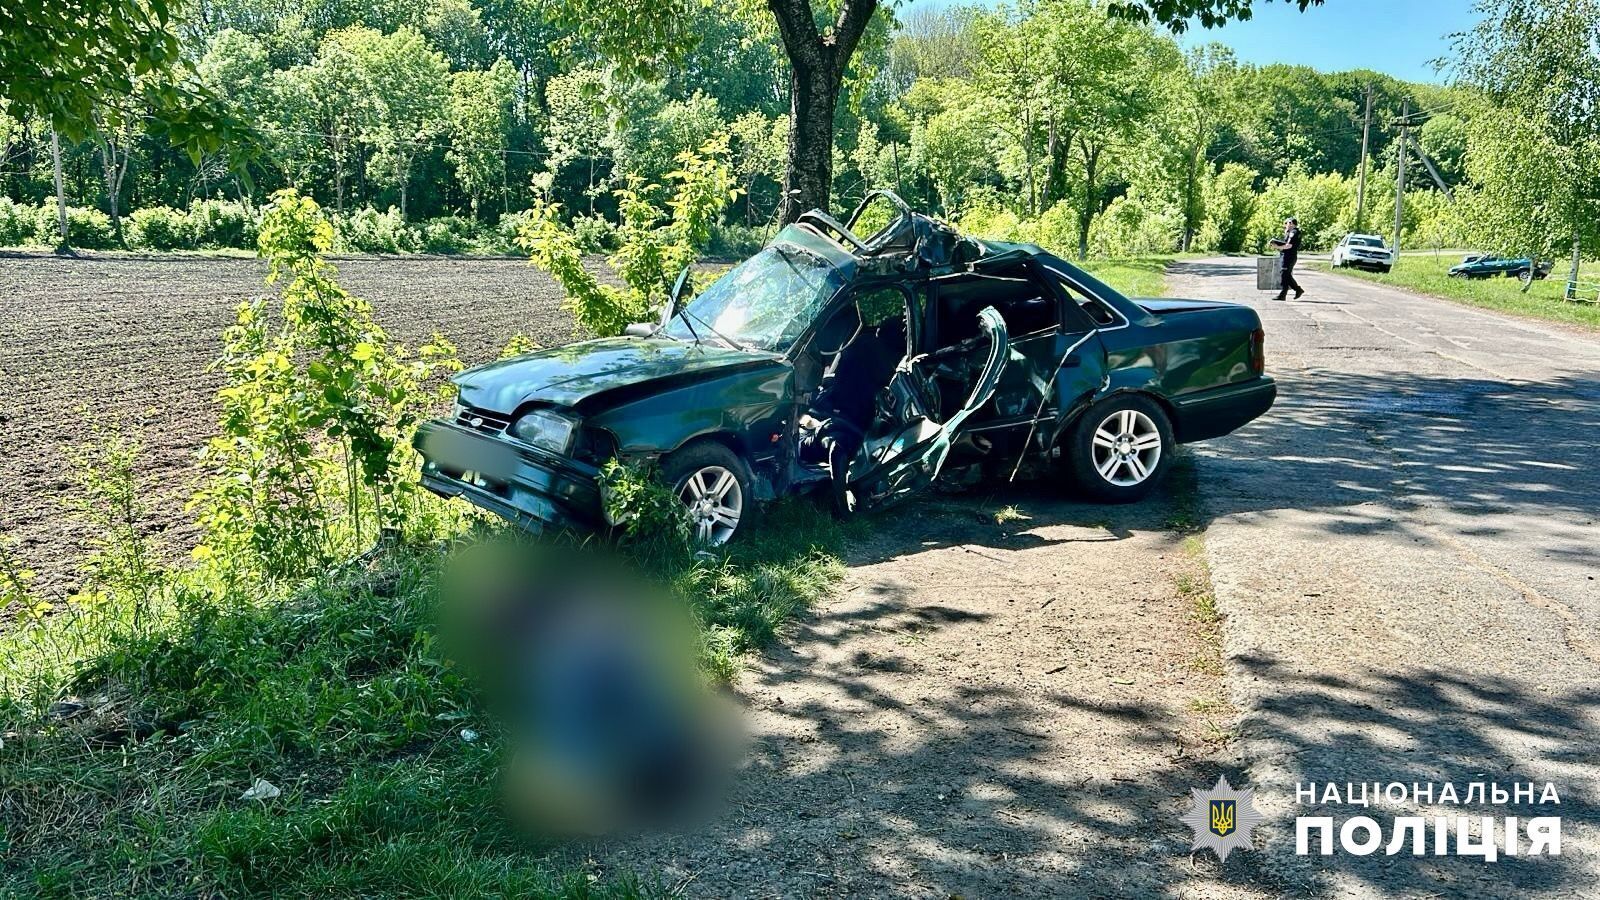 В Одесской области авто влетело в дерево: водитель погиб, пассажир был госпитализирован. Фото